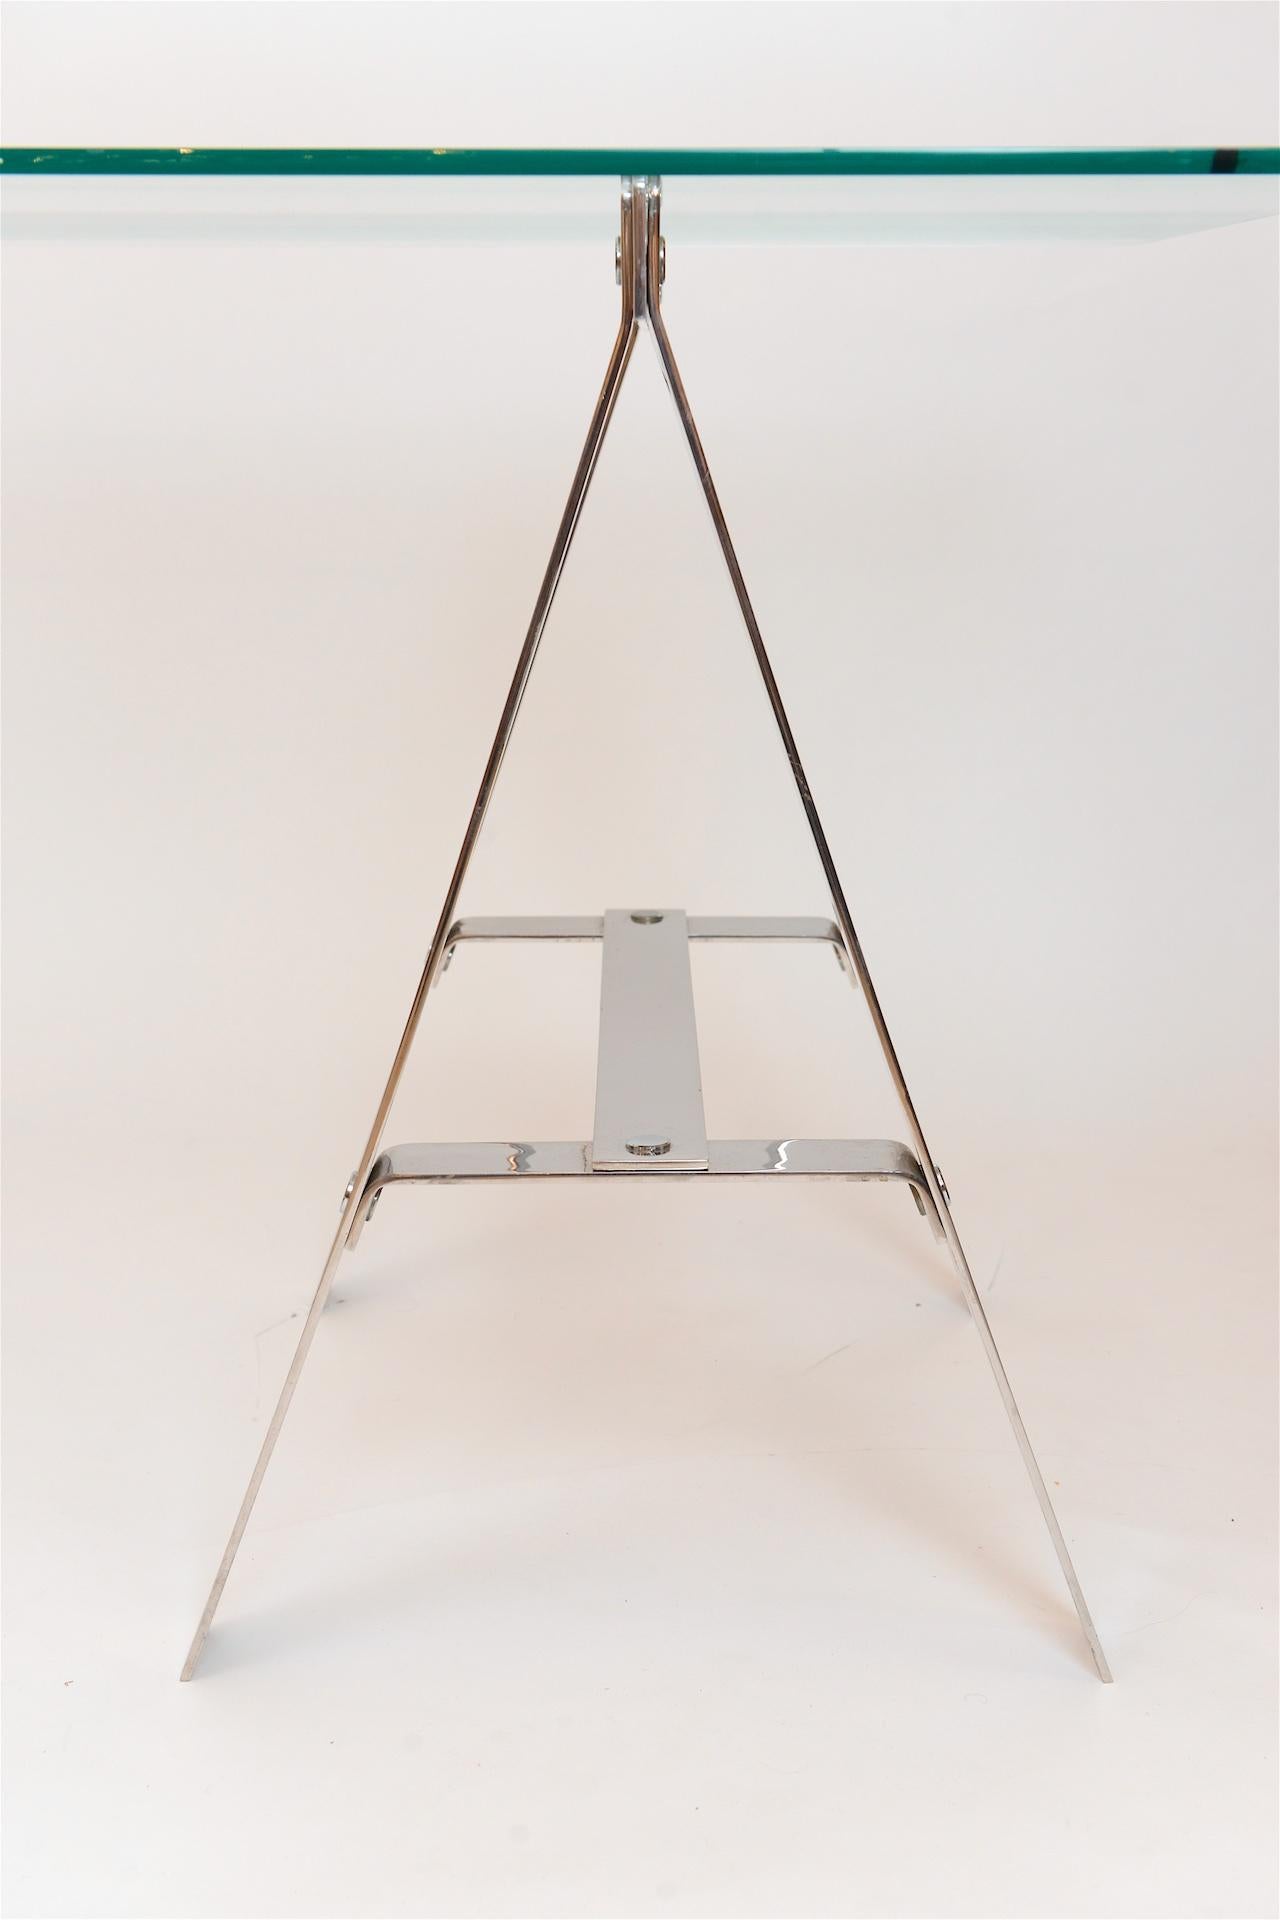 Minimalist Vittorio Introini Trestle Table In Good Condition In London, GB